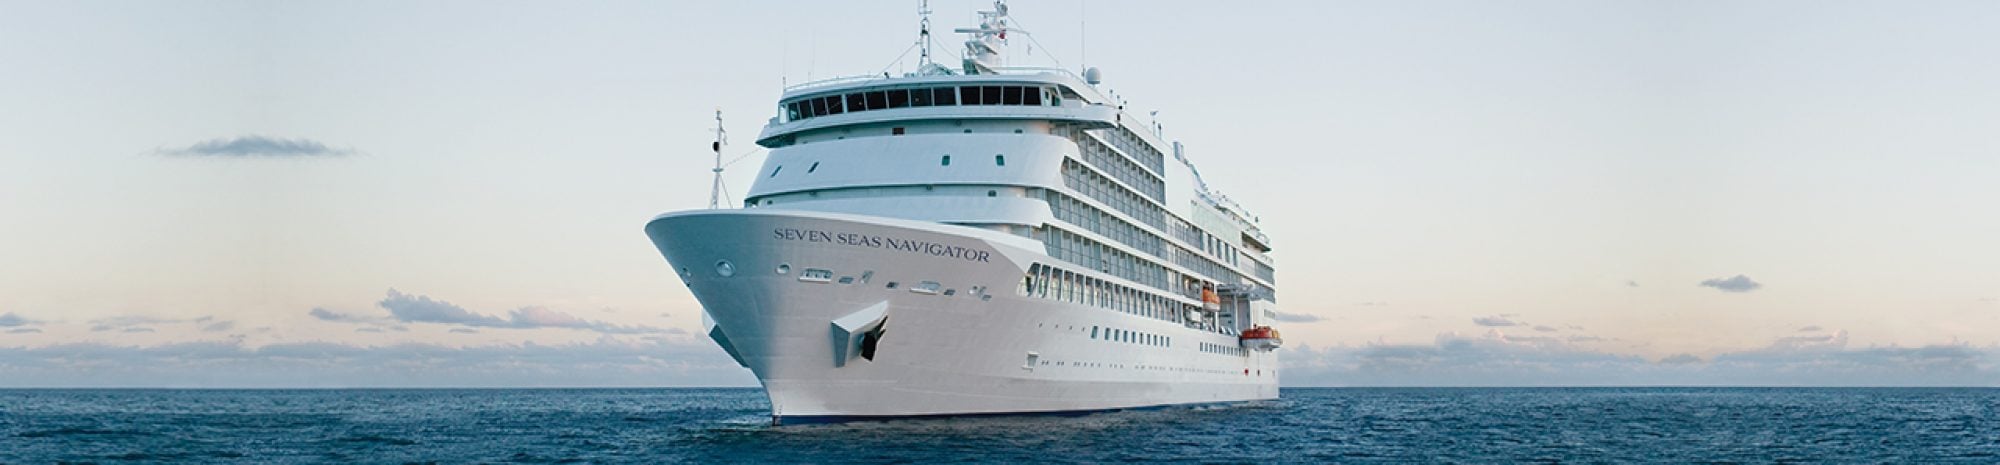 J’ai visité le Seven Seas Navigator : un palace sur la mer